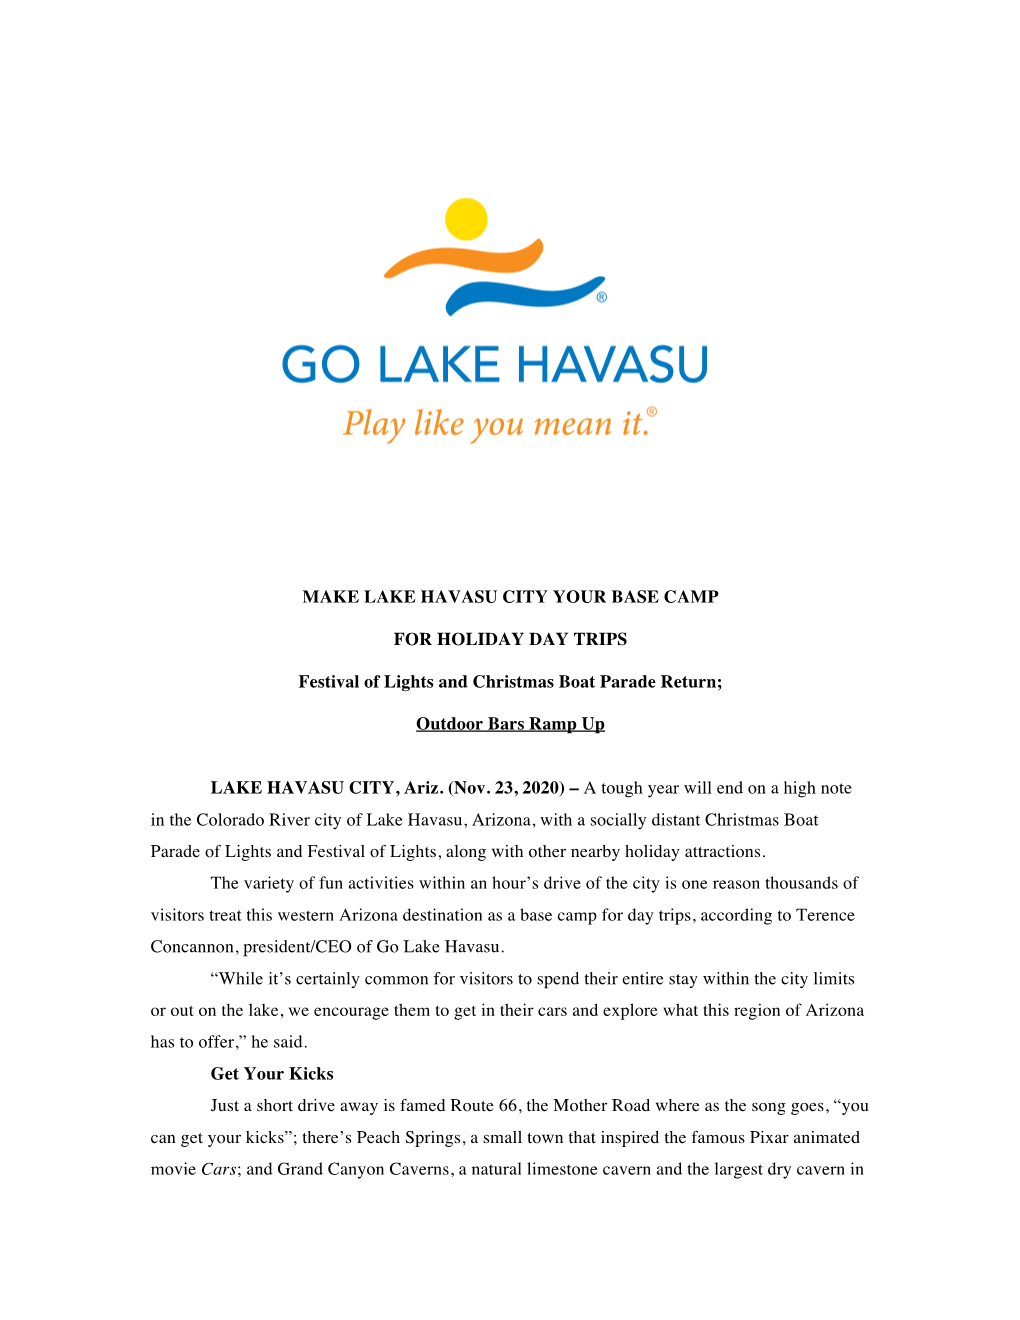 Make Lake Havasu City Your Base Camp for Holiday Day